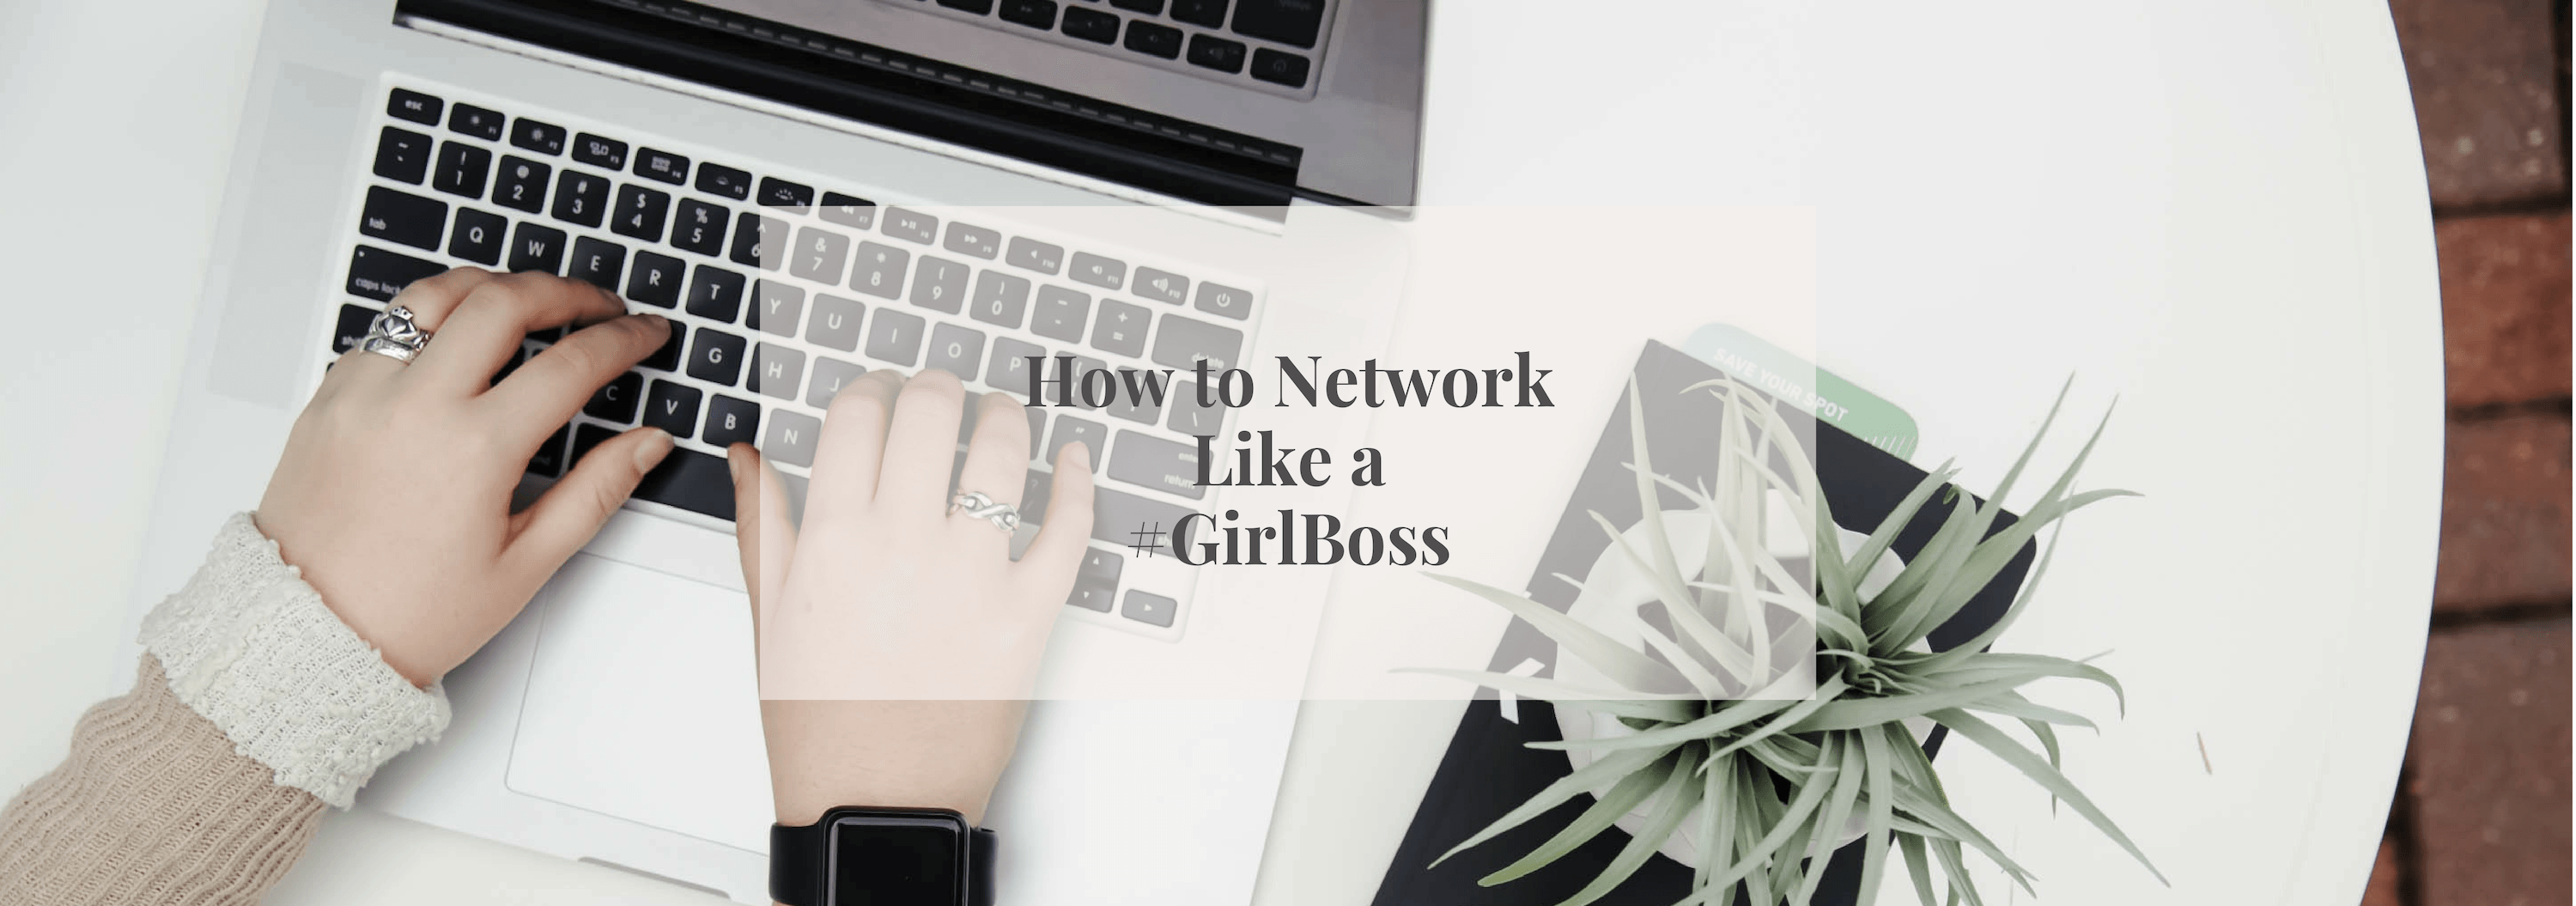 How to Network like a #GirlBoss - Numi